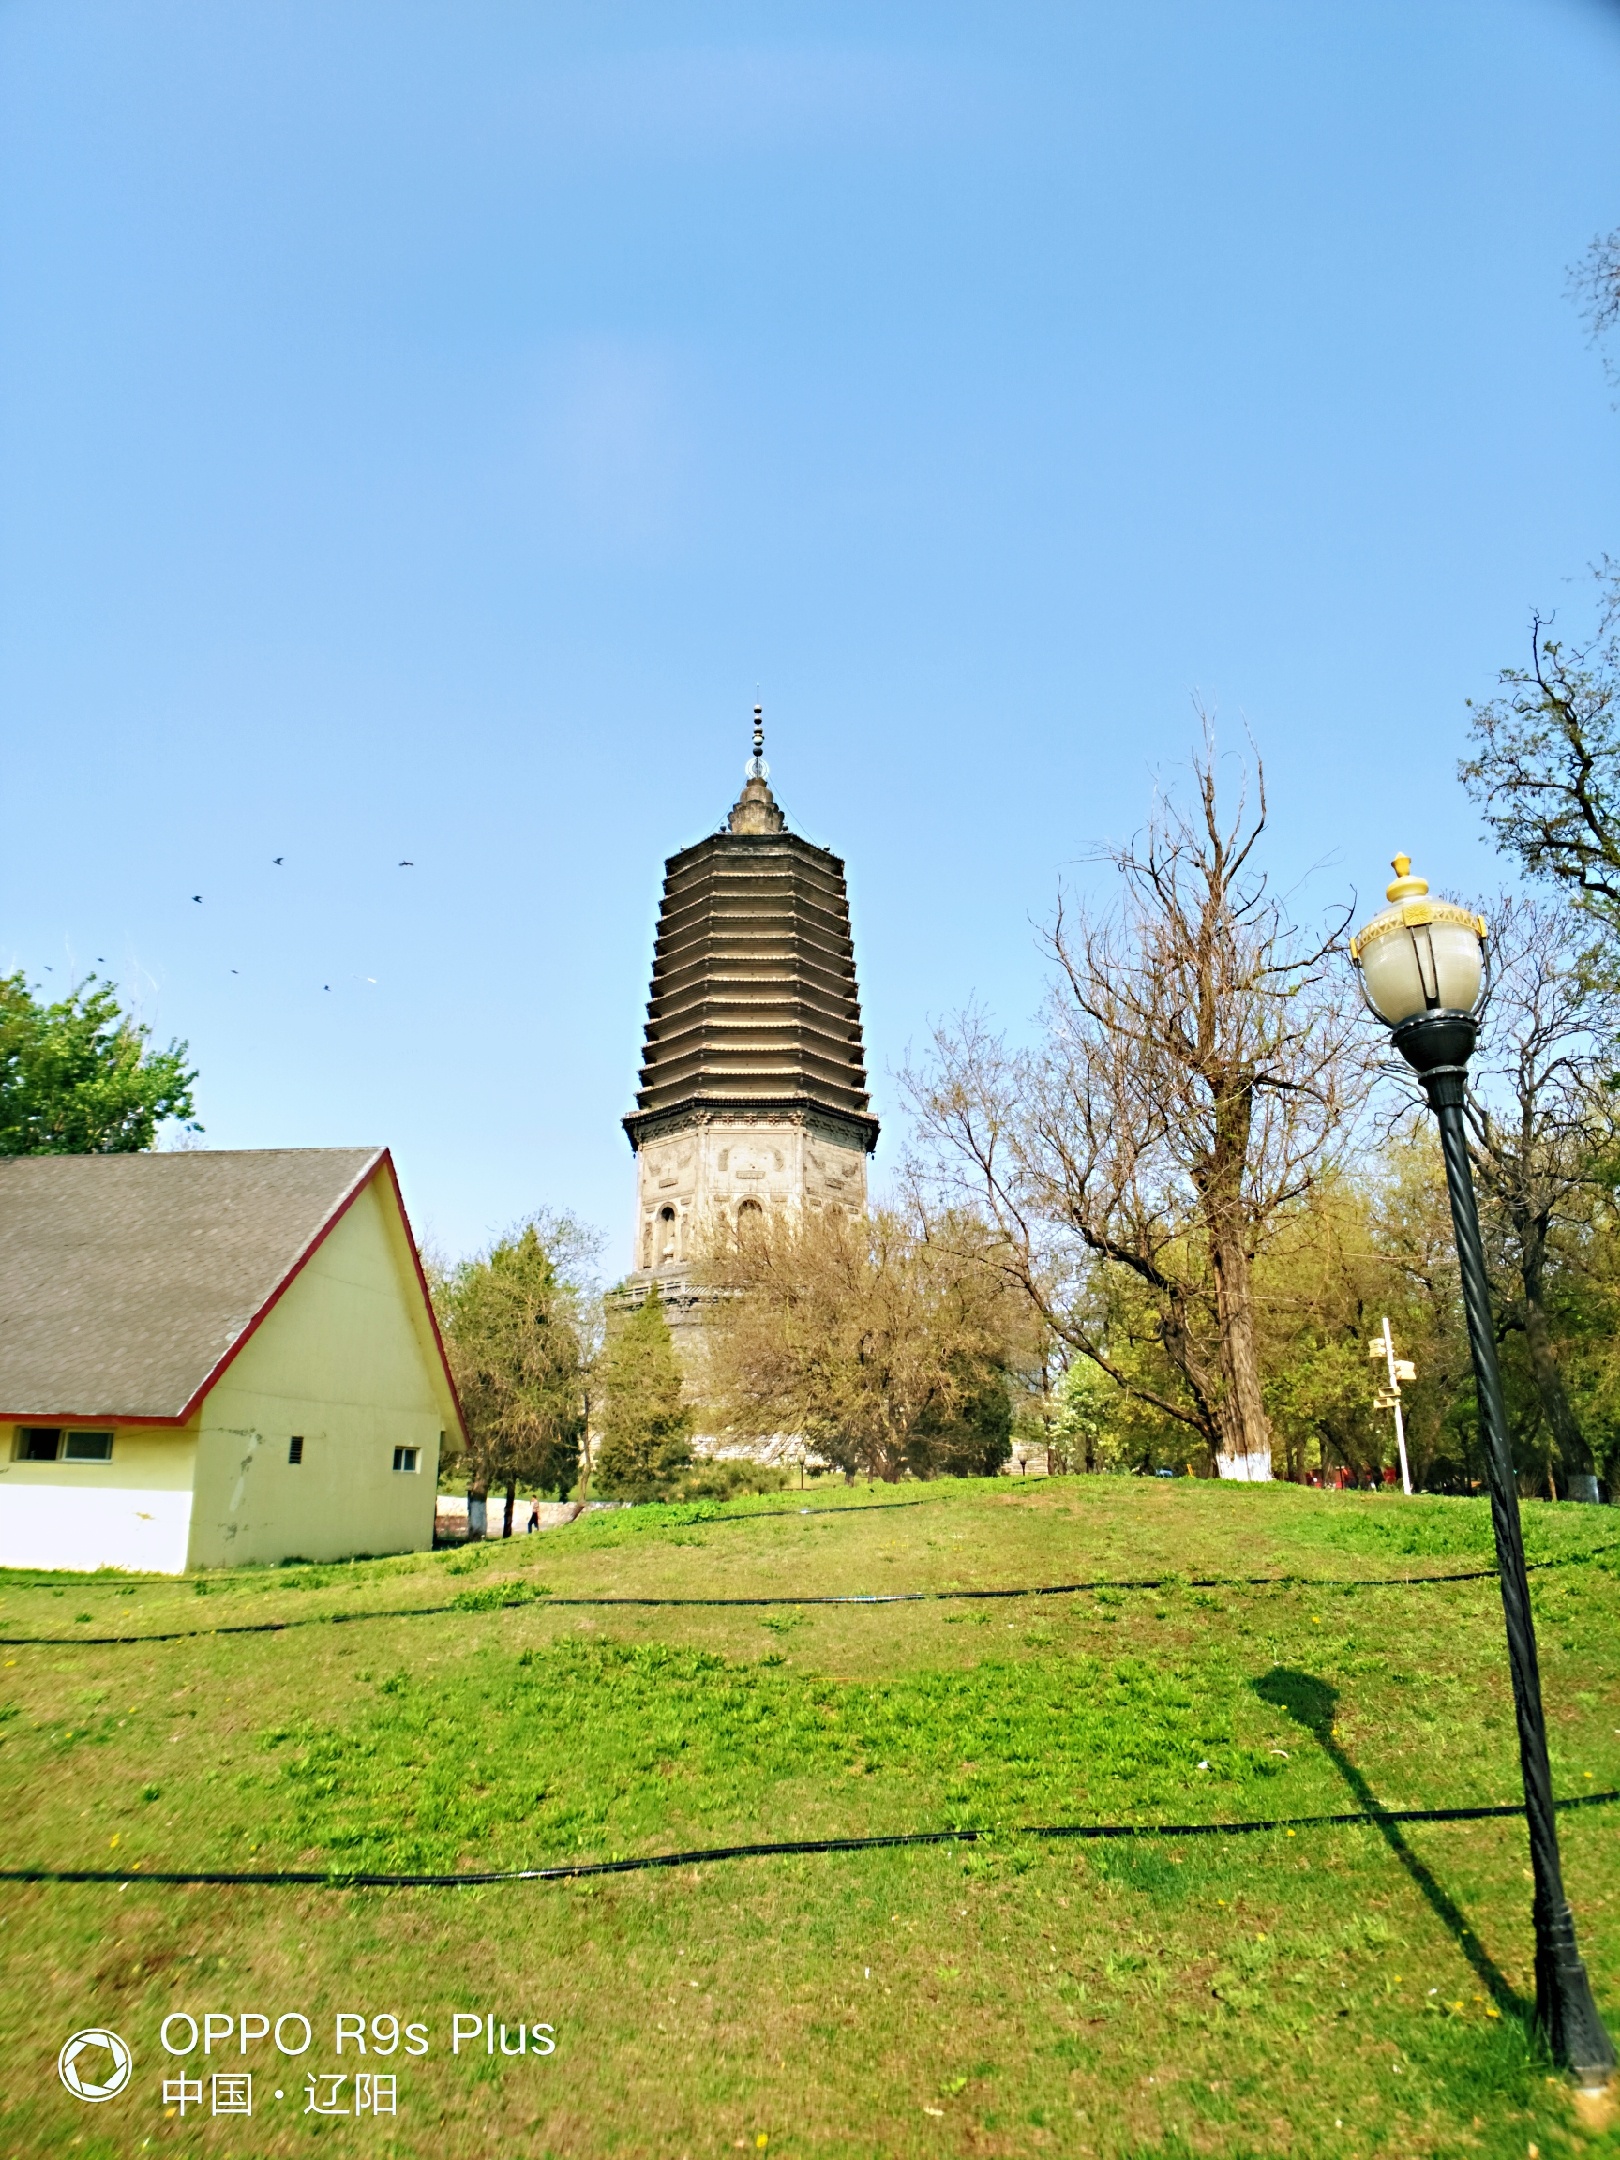 辽阳白塔公园里面的辽阳白塔是全国76 座古塔之一，属国家级文物保护单位